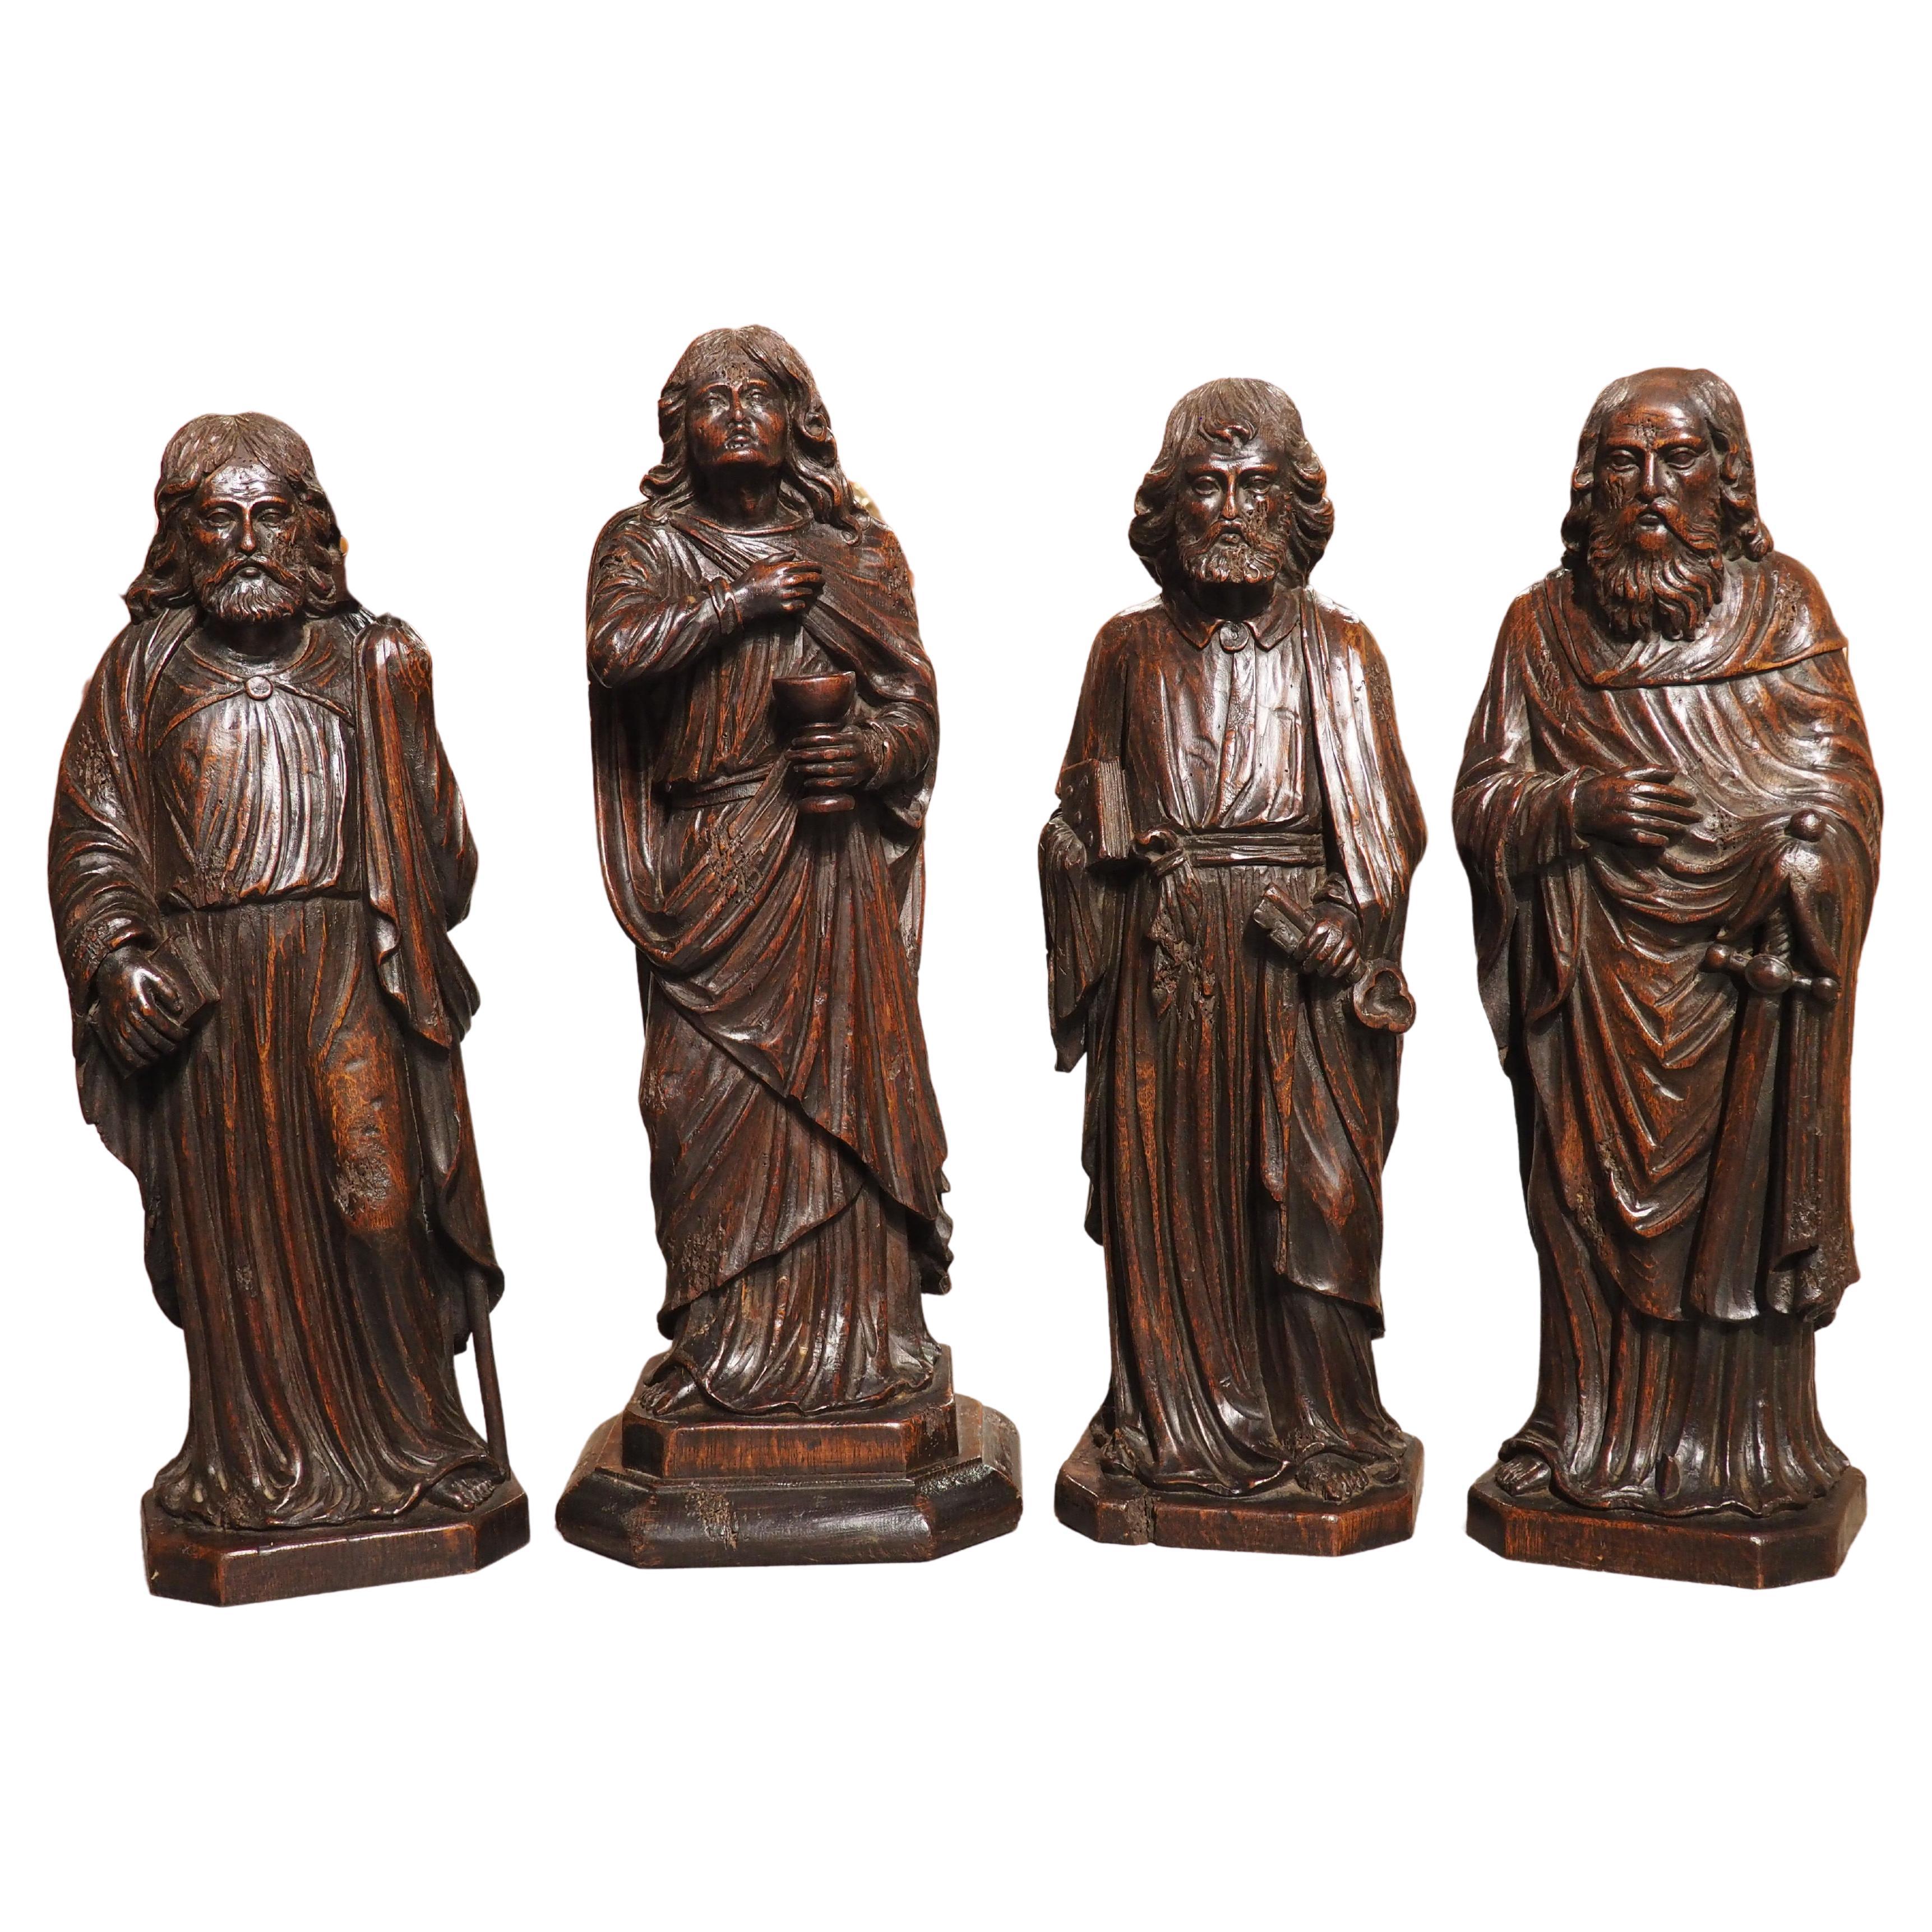 Geschnitzte Eichenholzskulpturen der Apostel James, John, Peter und Paul aus der Zeit um 1800